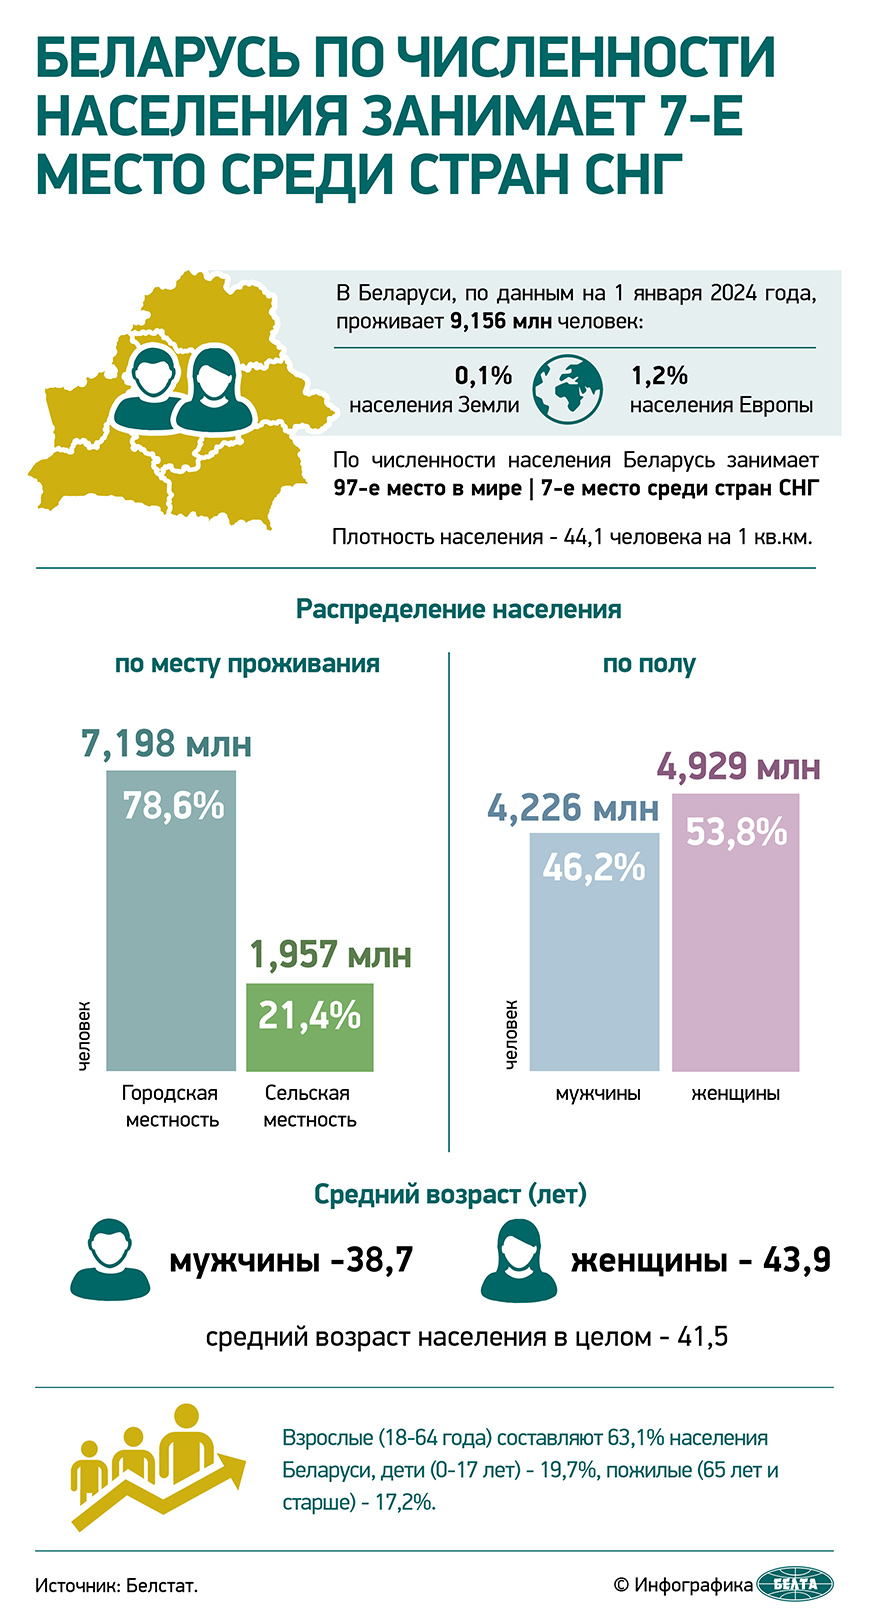 Беларусь по численности населения занимает 7-е место среди стран СНГ